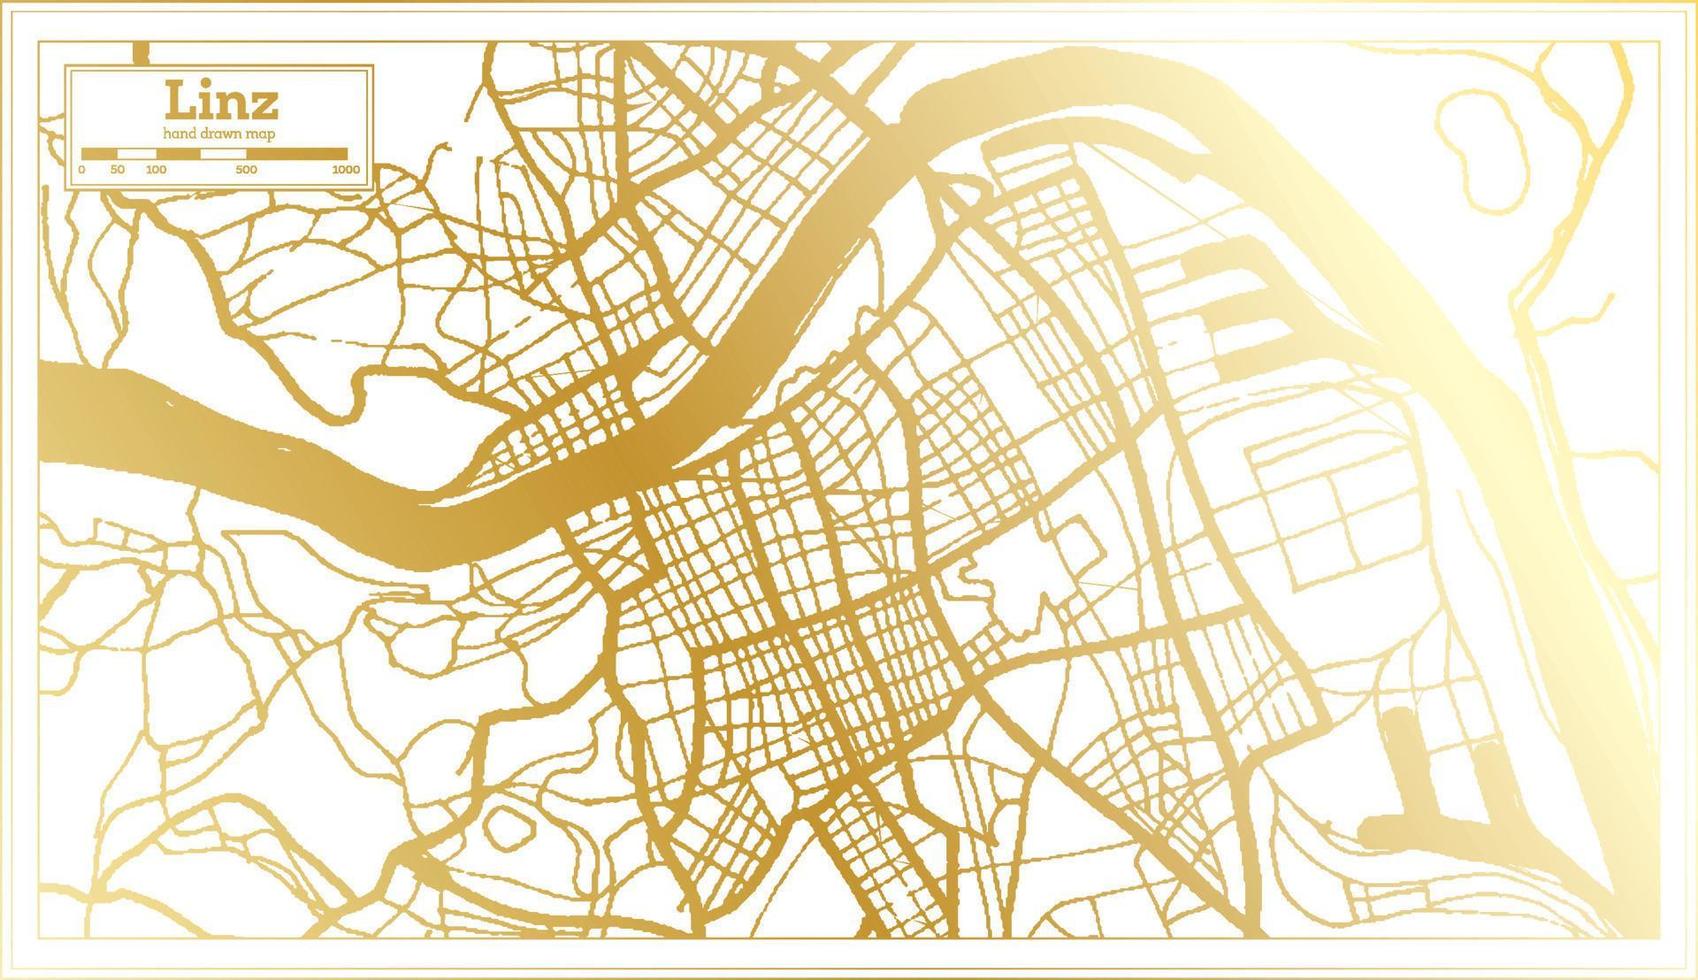 linz Oostenrijk stad kaart in retro stijl in gouden kleur. schets kaart. vector